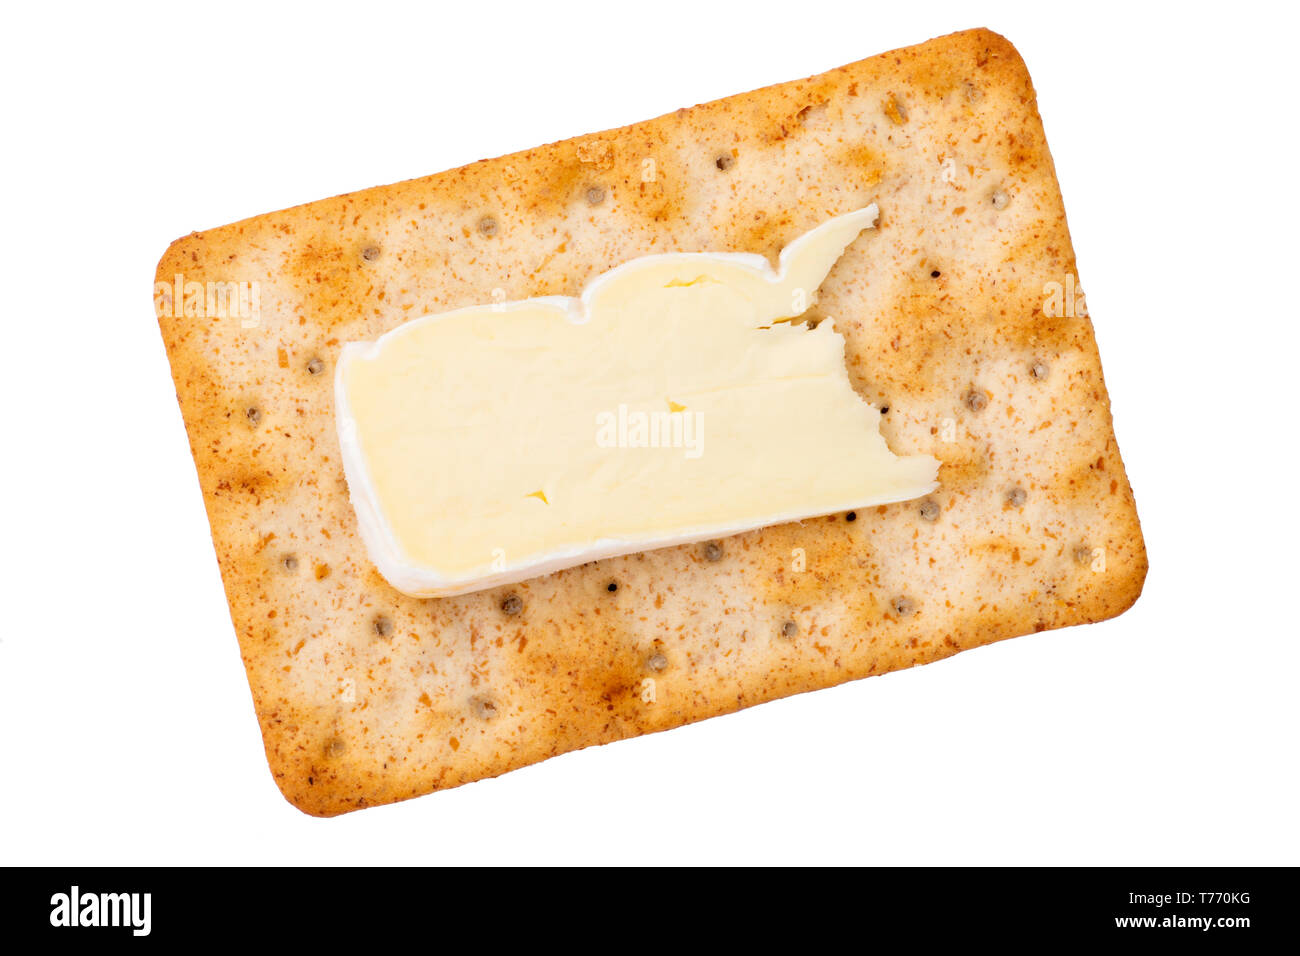 Käse, Cracker mit einer Scheibe Brie von oben gesehen. Sauerteig Kekse für einen schnellen Snack, UK. Ausschneiden oder auf weißem Hintergrund Stockfoto